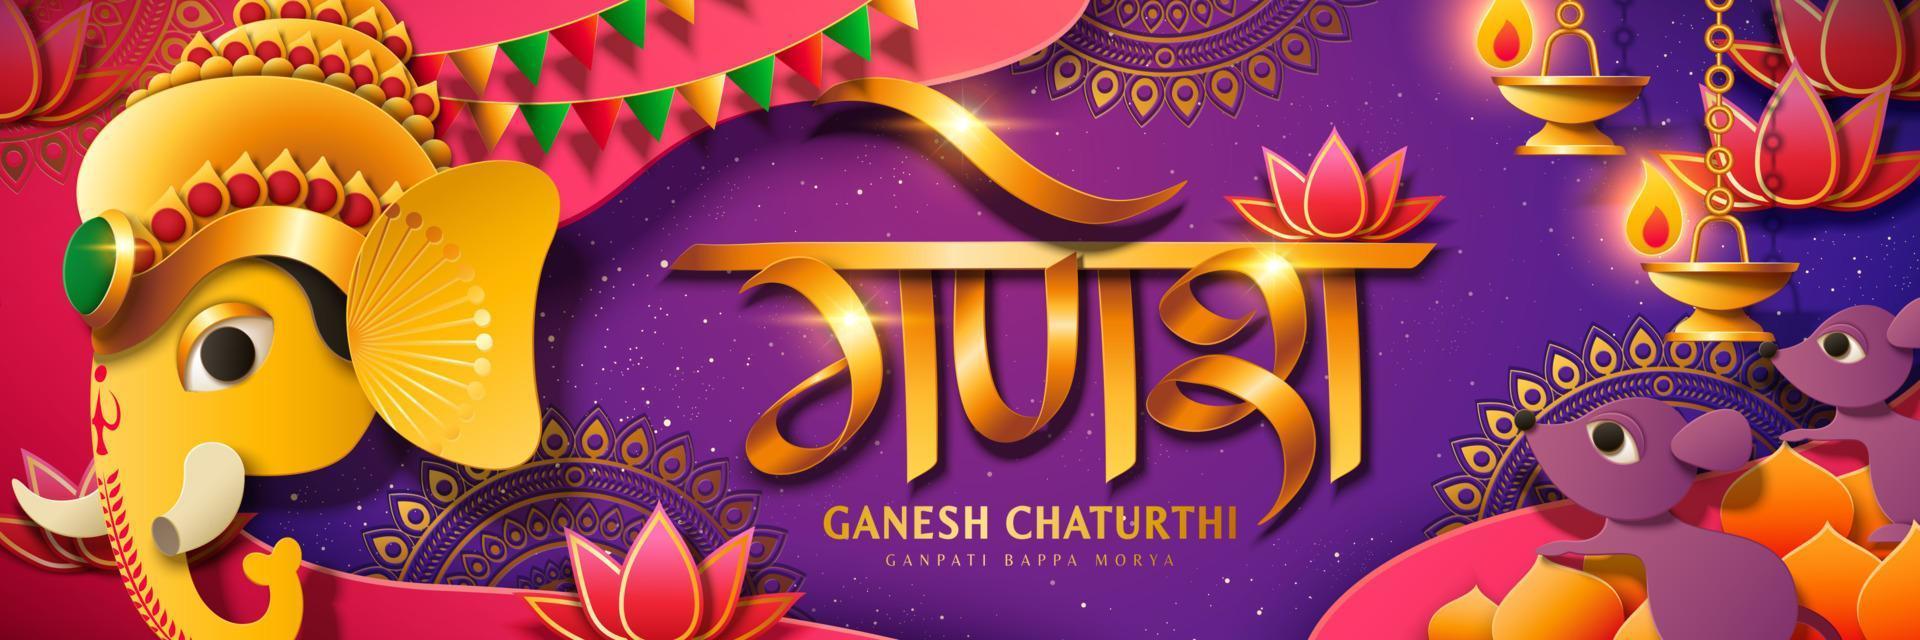 ganesh chaturthi festival banner mit goldener farbe hindu-gott ganesha kopf, ganesha geschrieben in hindi-wörtern auf lila hintergrund vektor